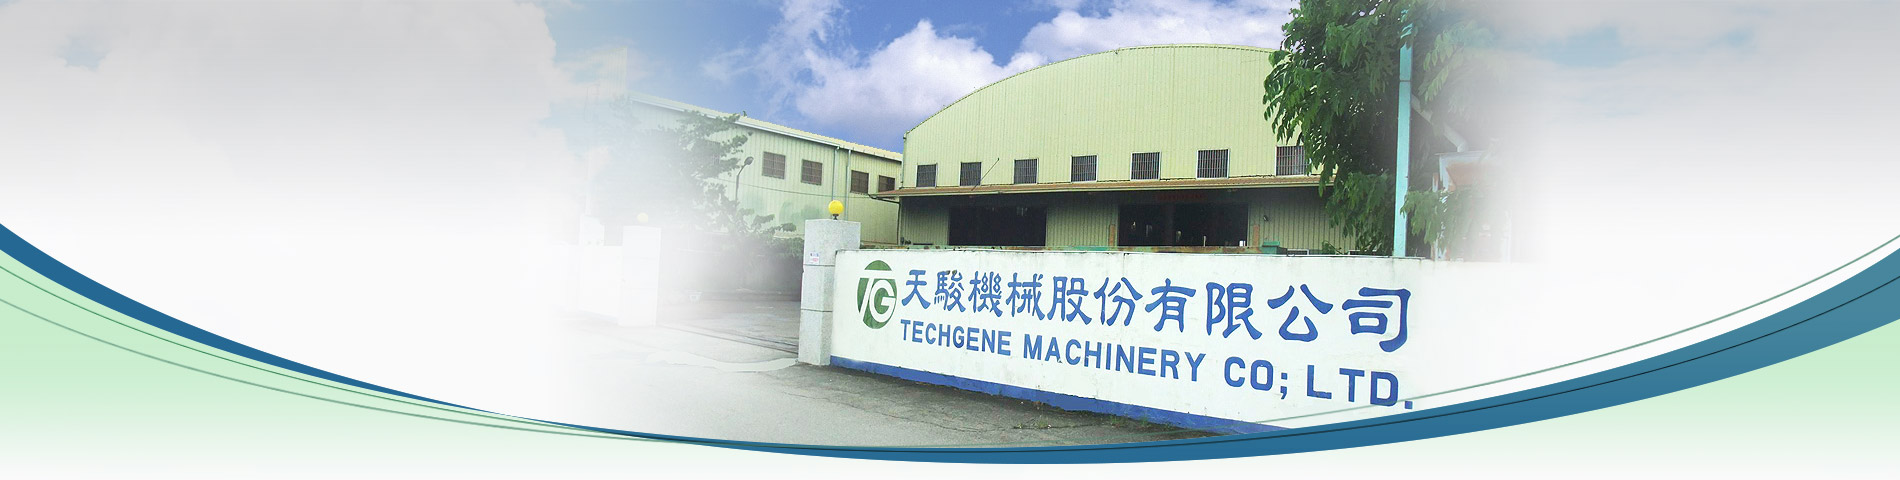 압축기 전문가 대만의 압축기 제조사